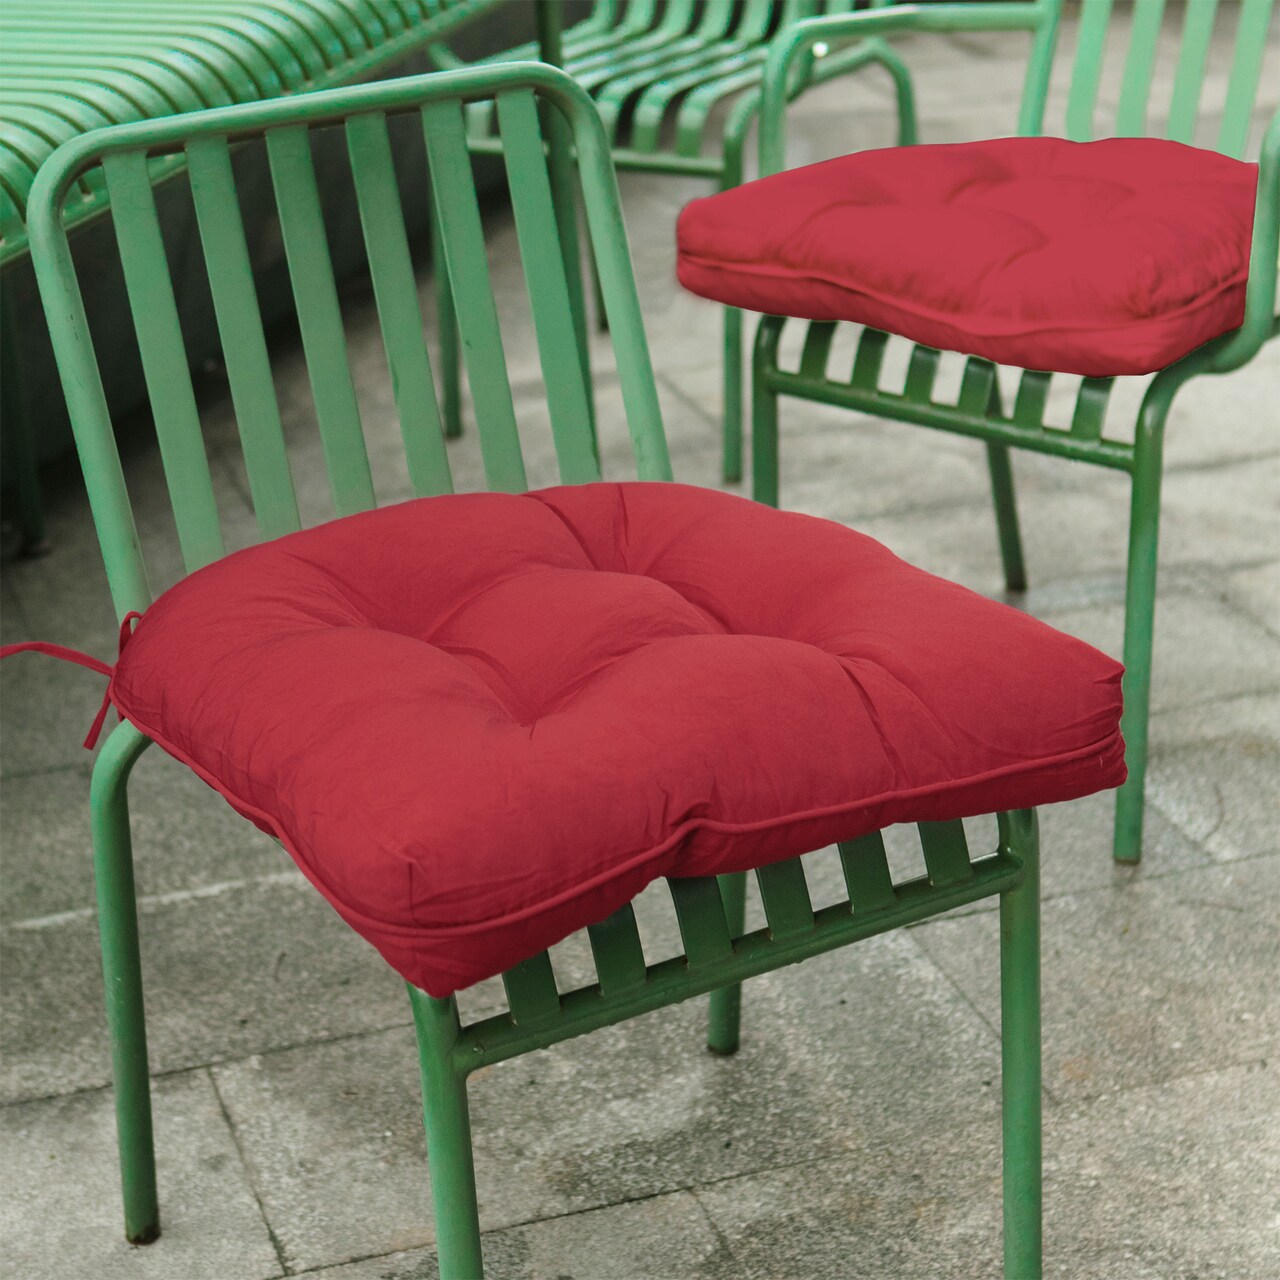 Waterproof Outdoor Indoor Bench Pad & Seat Pad Garden Cushions